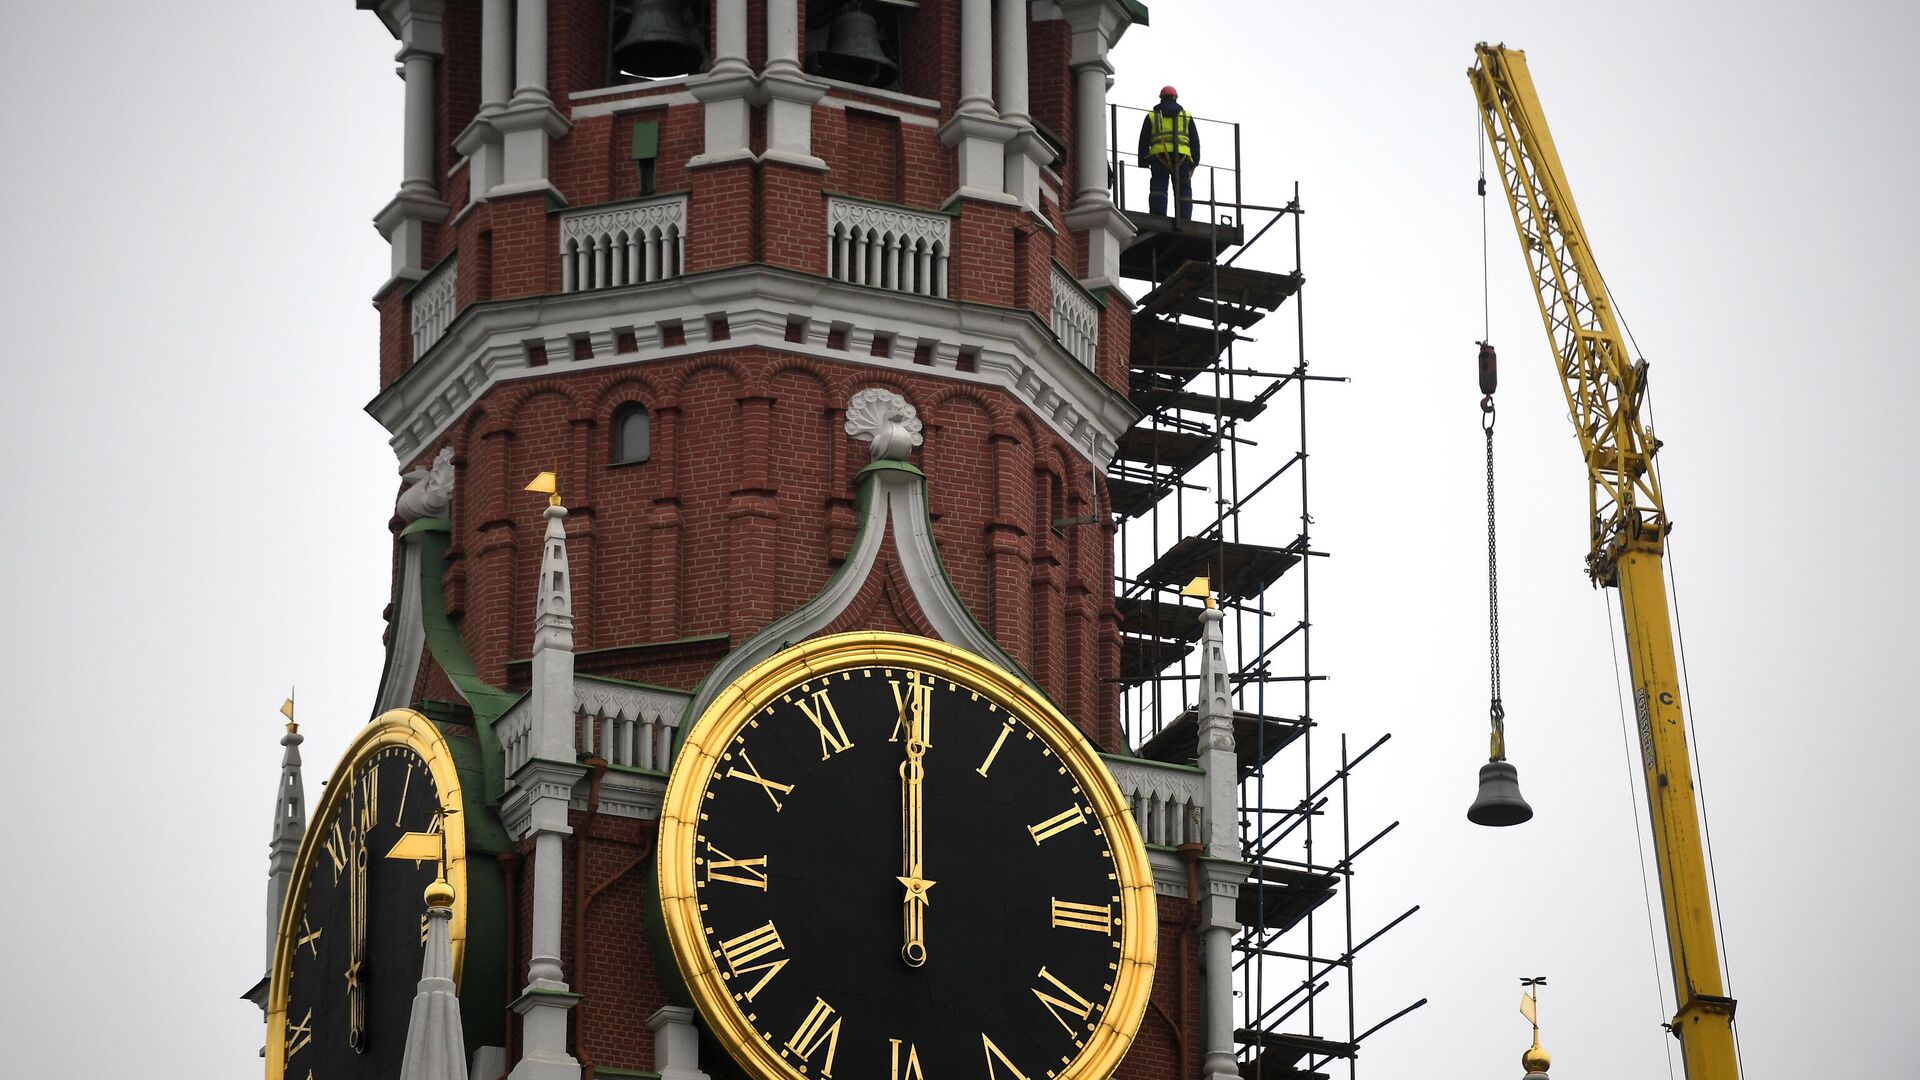 Подъем колокола для установки в звонницу Спасской башни Кремля - РИА Новости, 1920, 03.11.2020